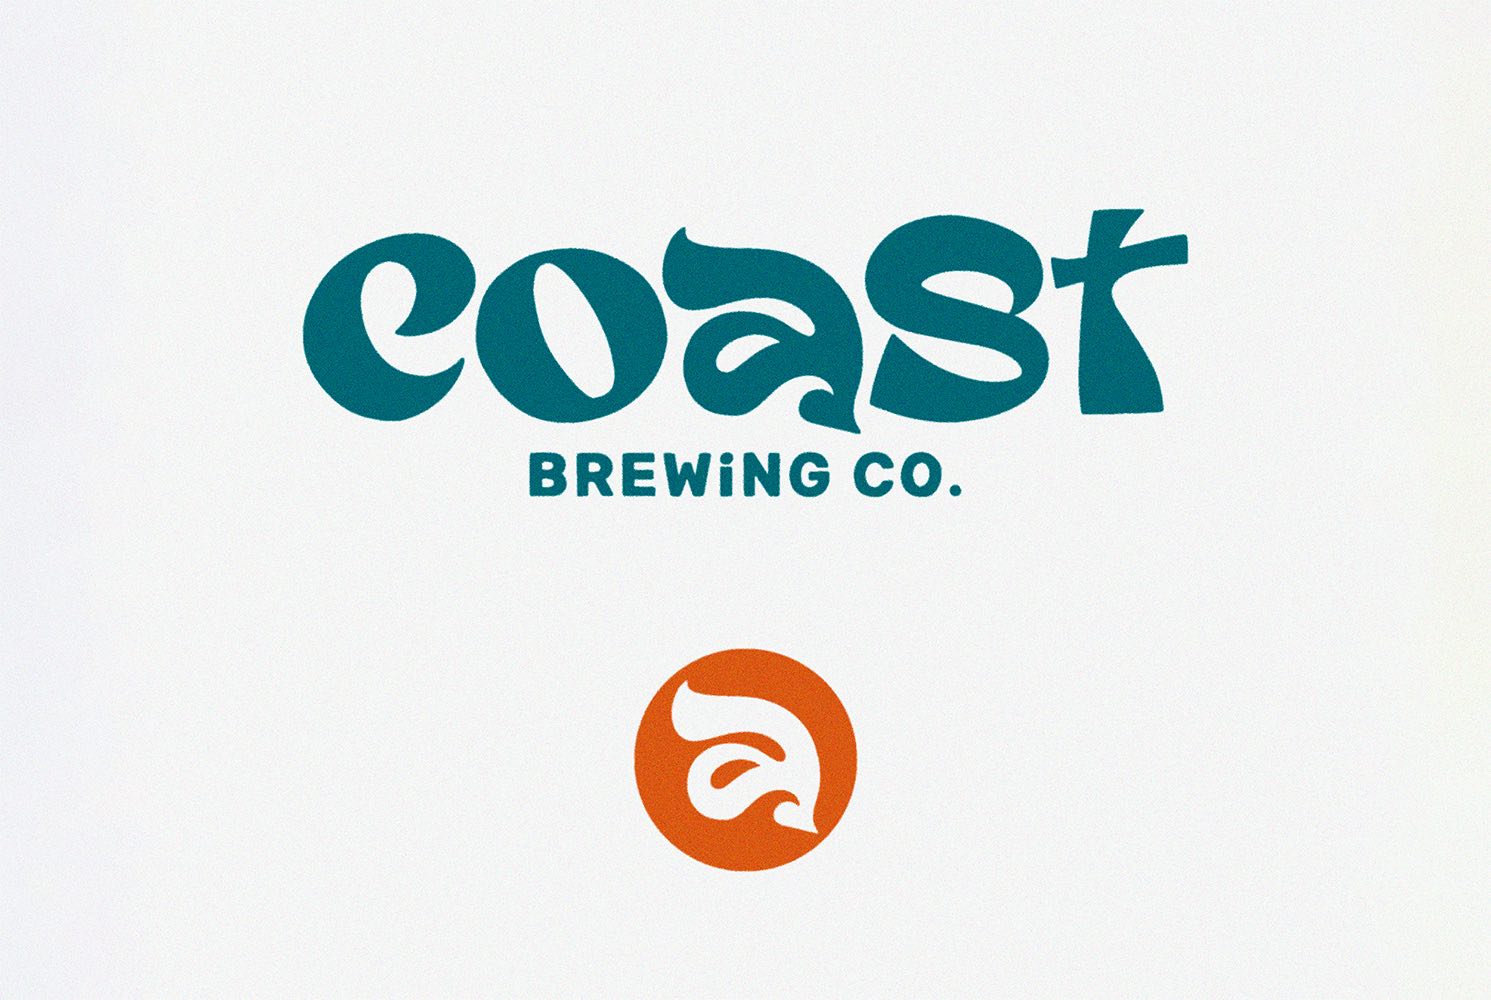 Coast Brewing Co